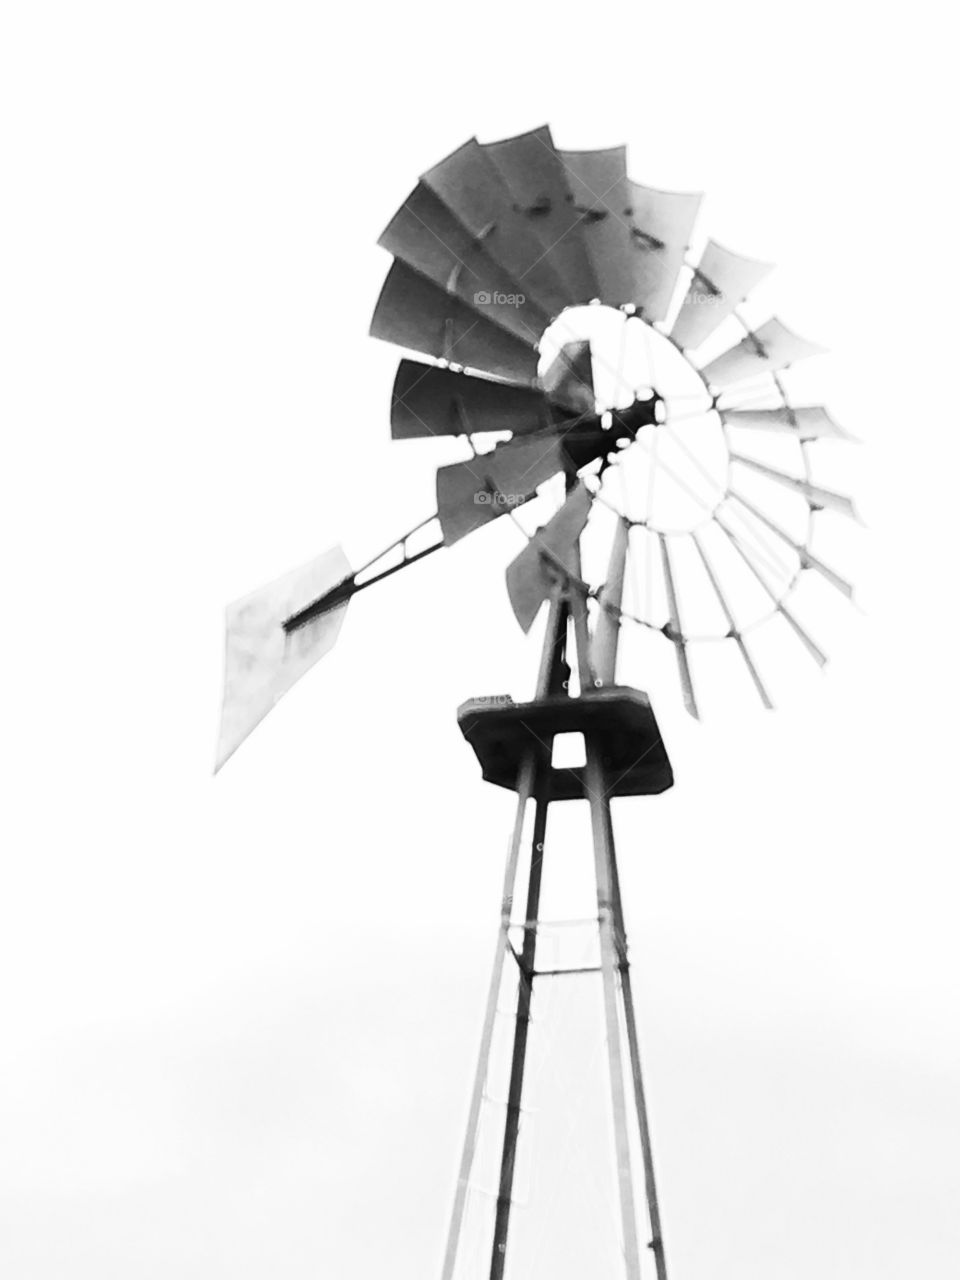 Windmill in Texas. 